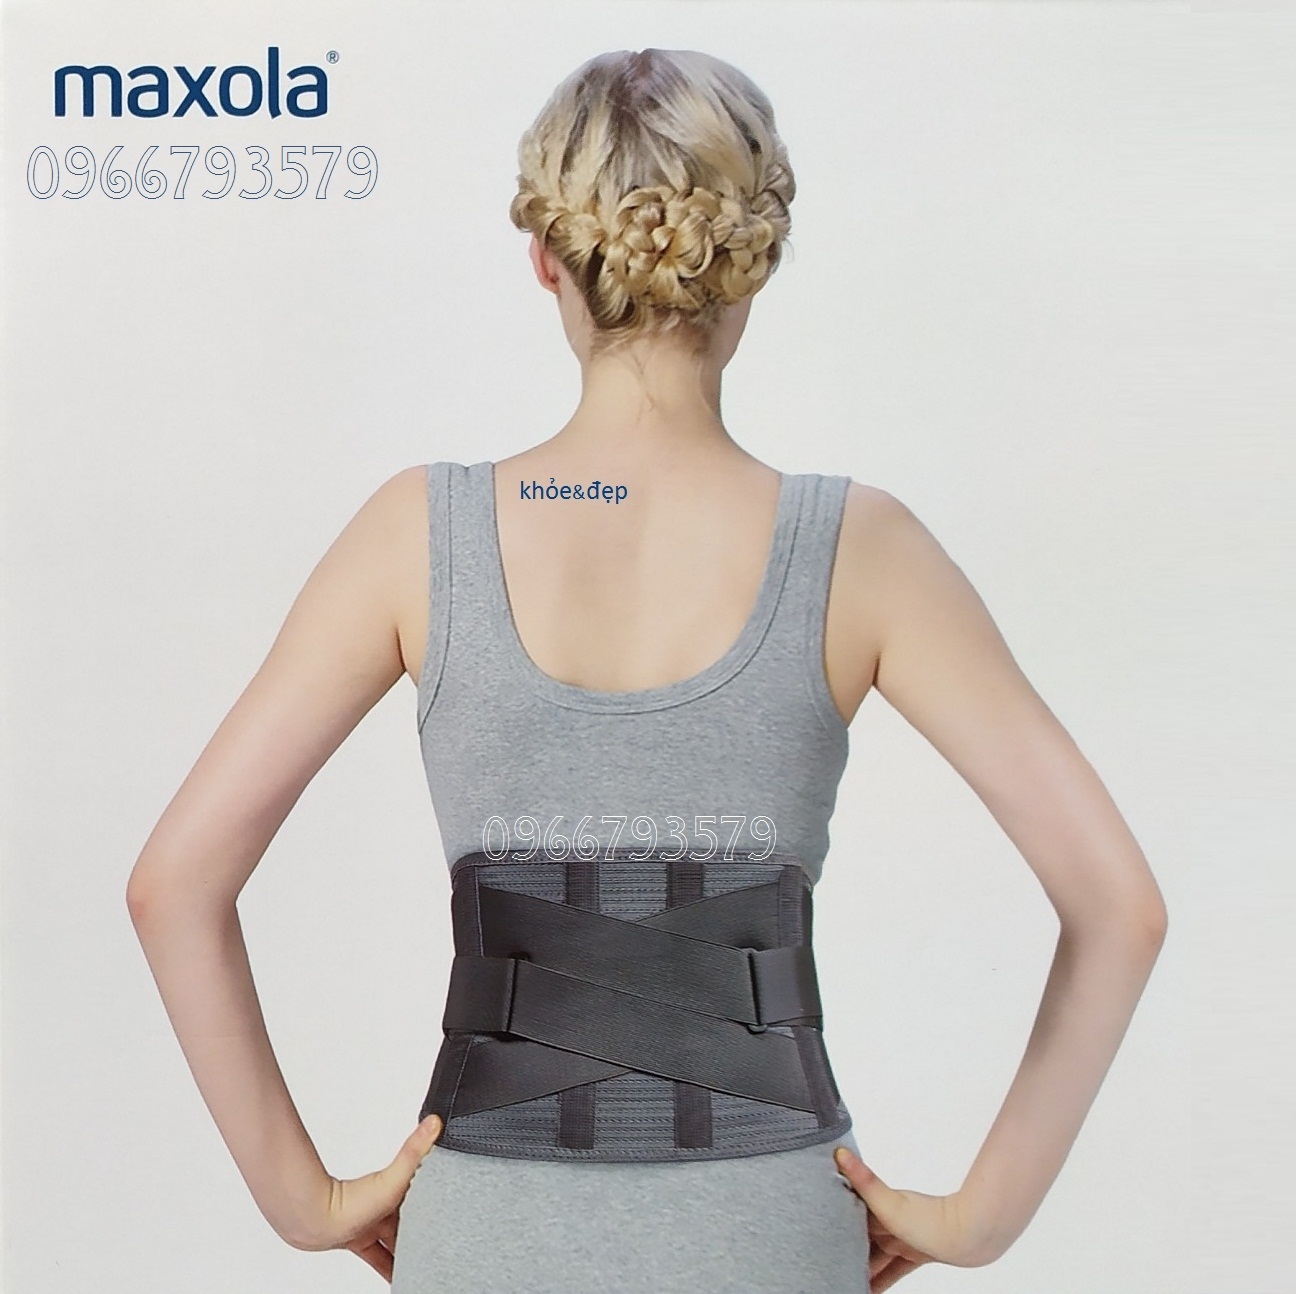 Đai lưng trị đau lưng, thoát vị đĩa đệm Maxola